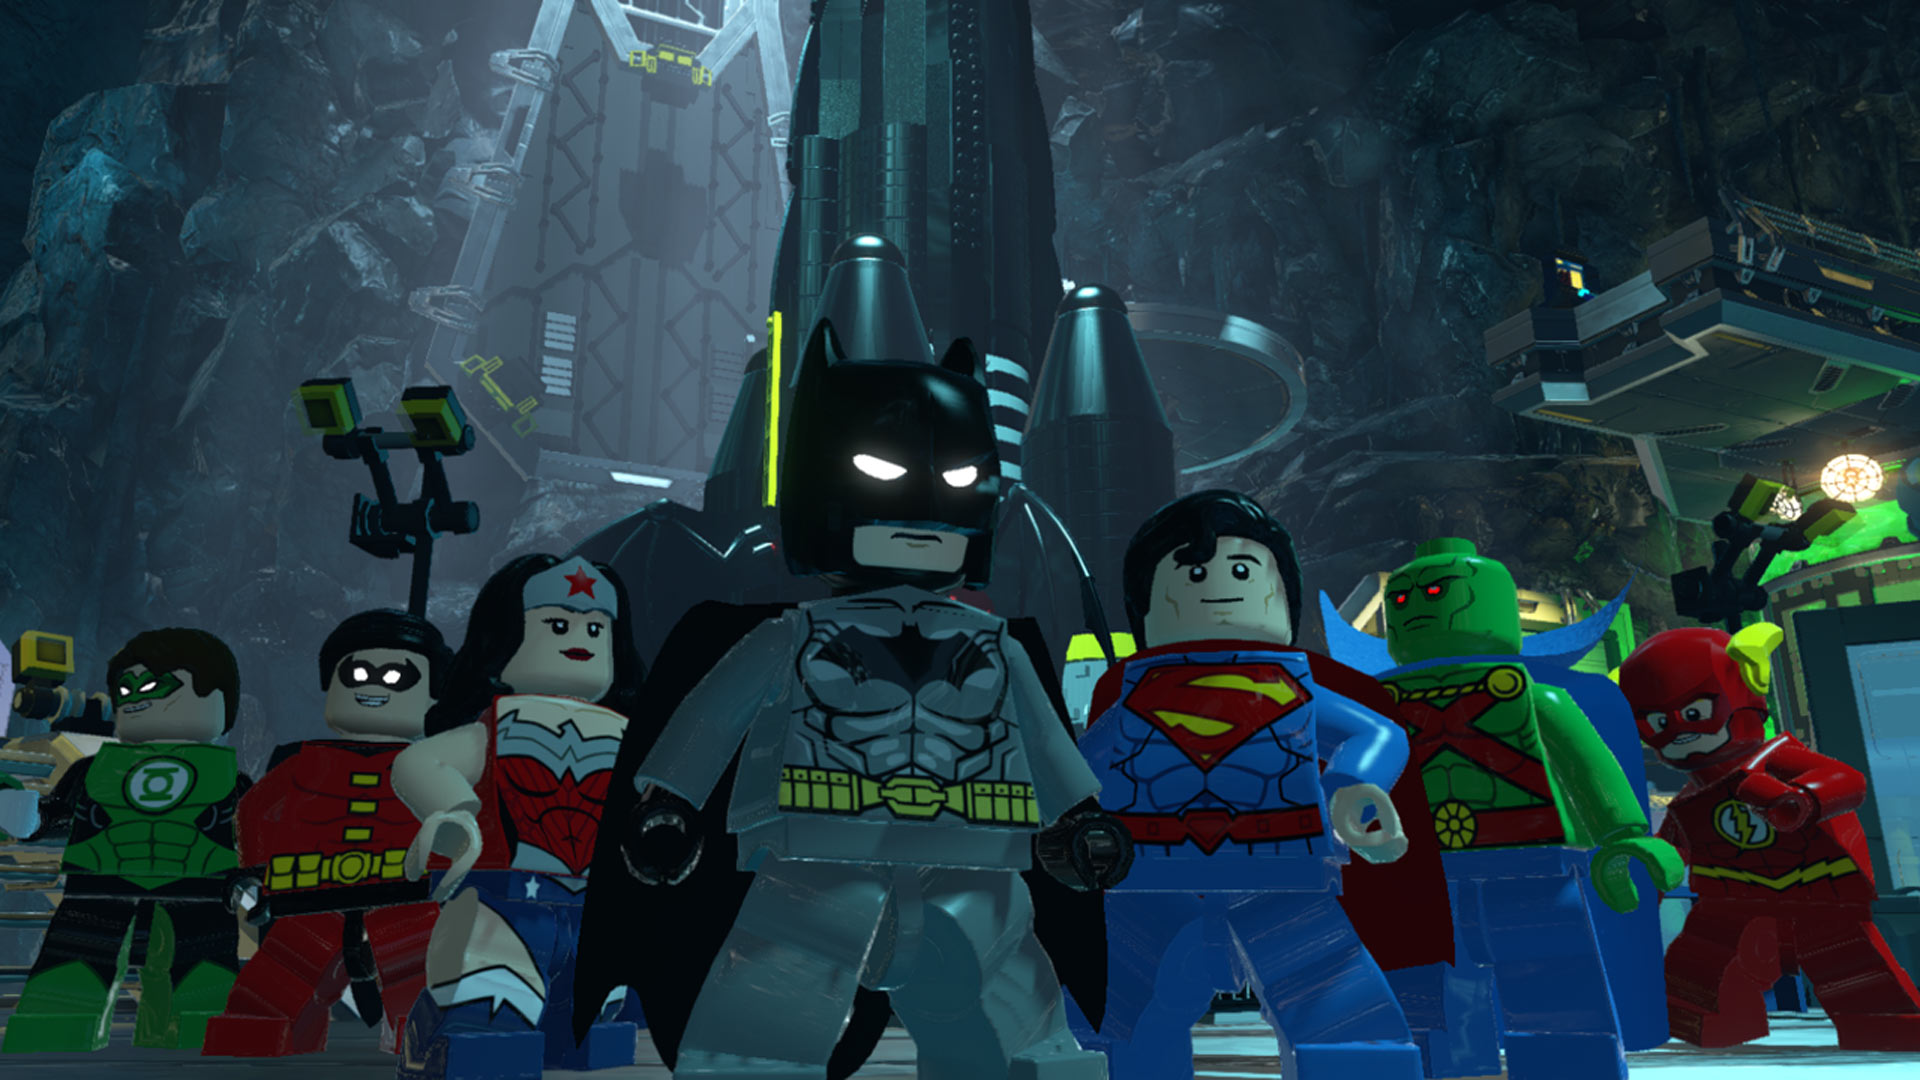 bohaterzy DC w grze LEGO Batman 3: Poza Gotham